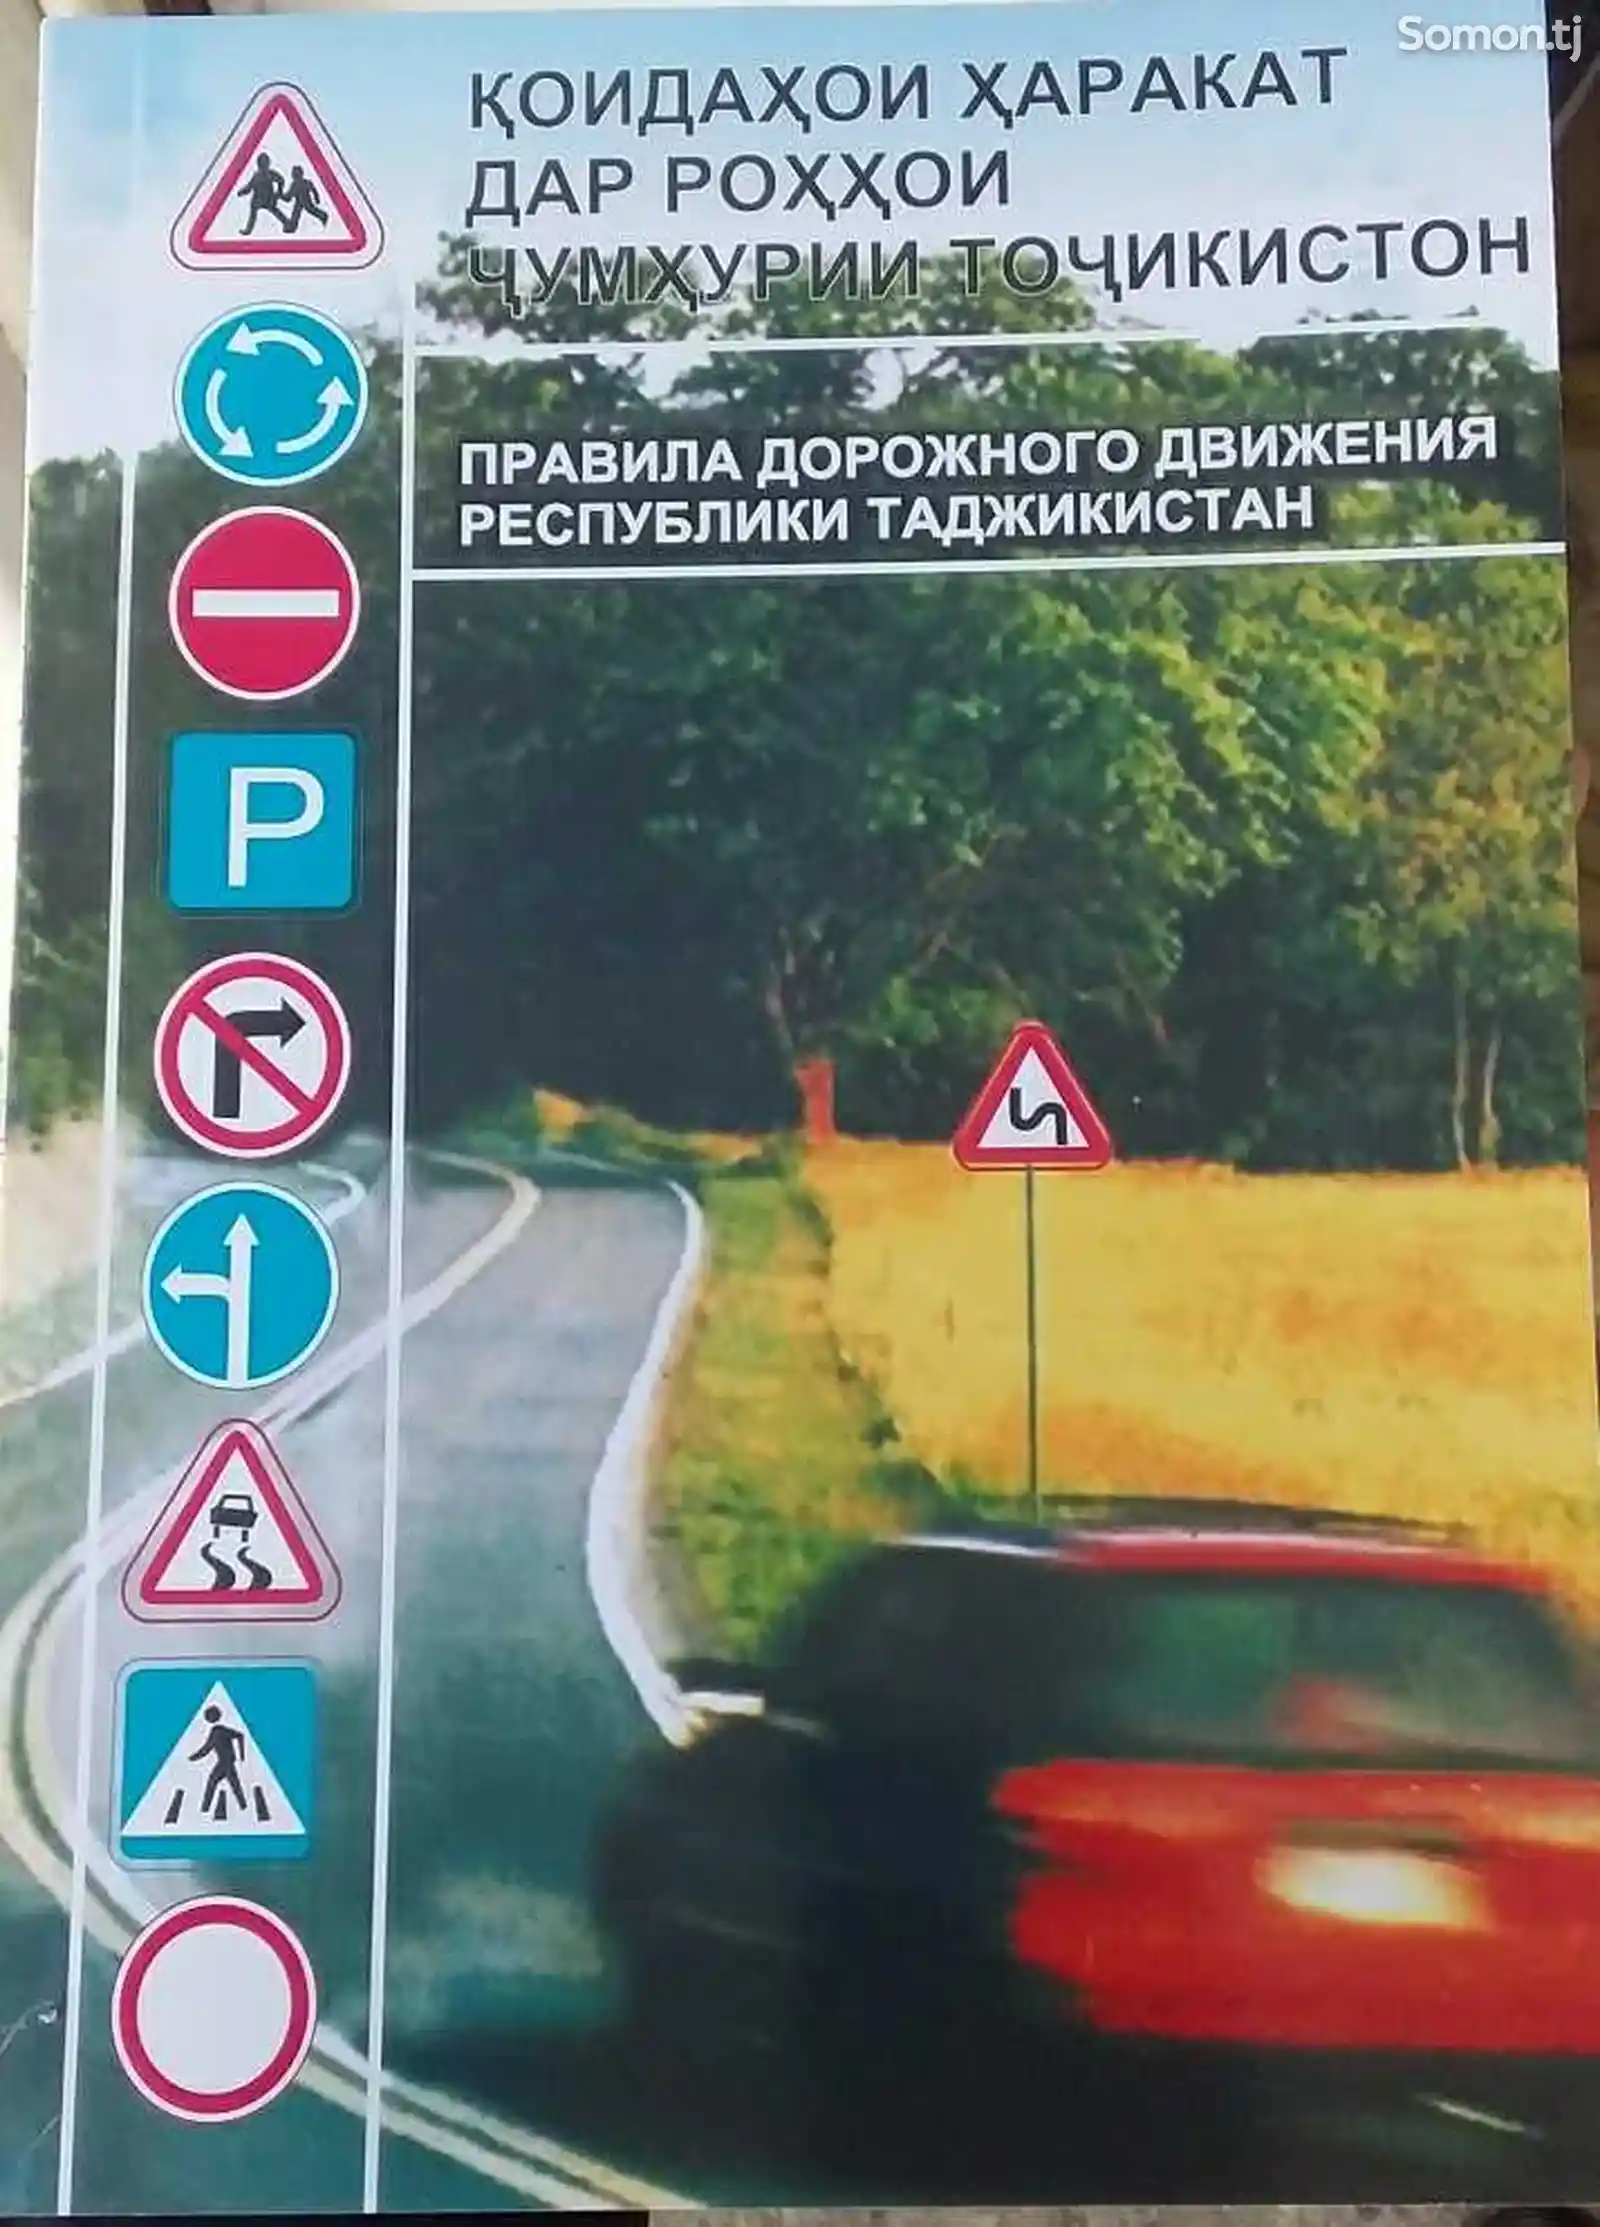 Книга правил дорожного движения РТ